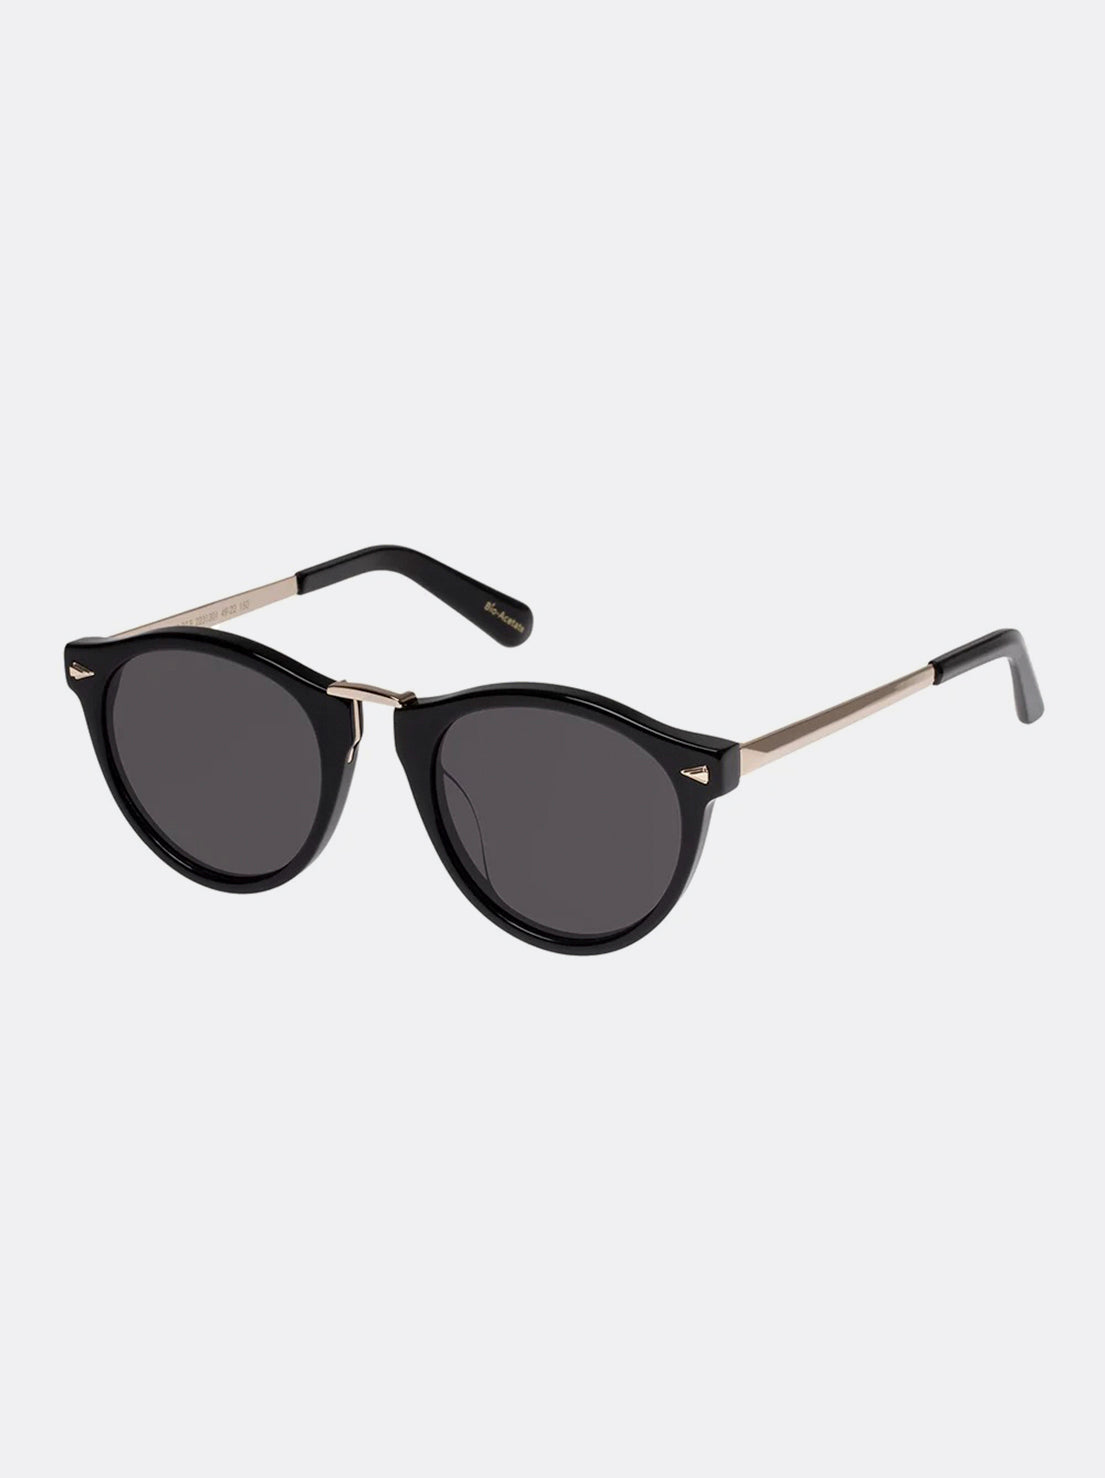 Karen Walker Eyewear - Helter Skelter Sunglasses - Black / Gold